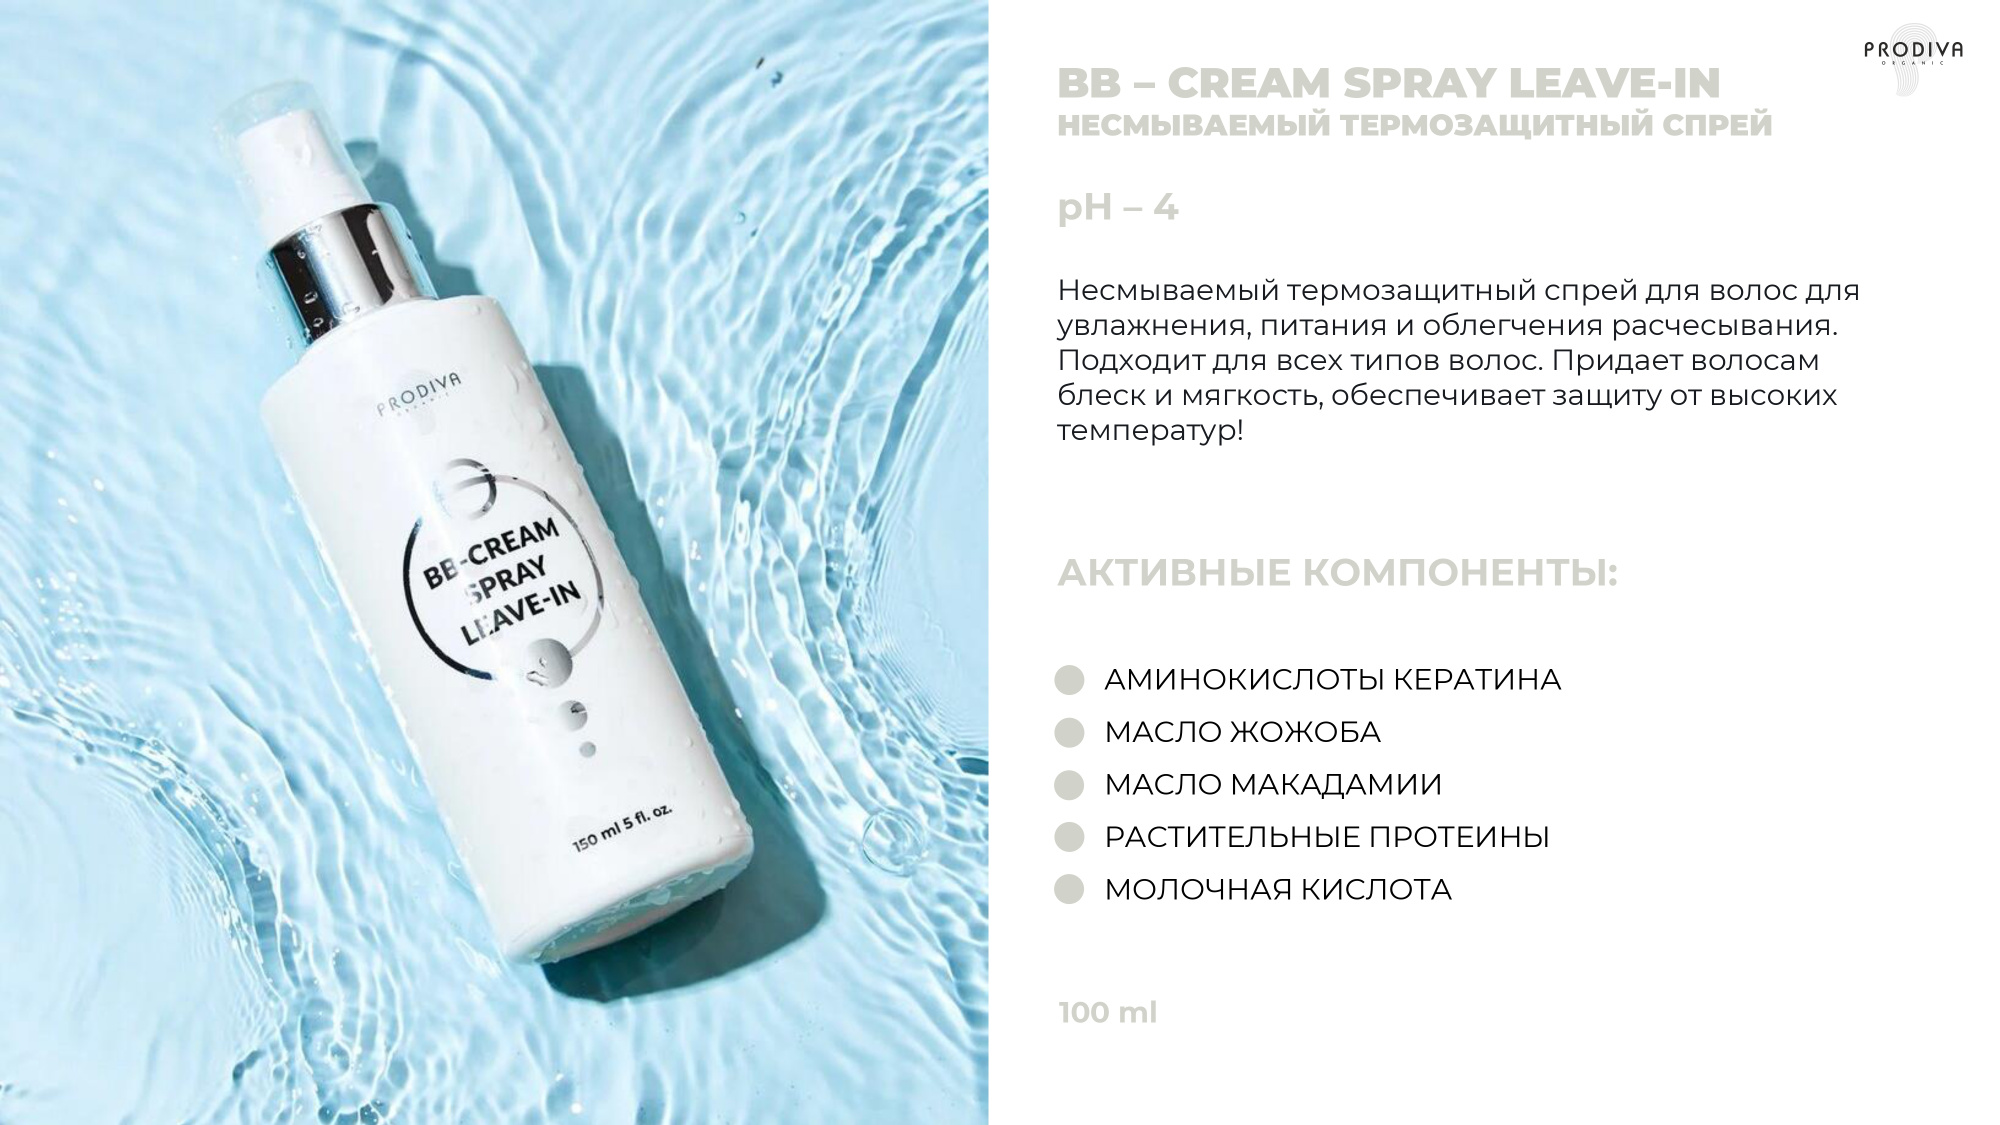 Универсальный кремовый термозащитный спрей для волос PRODIVA BB-CREAM Spray Leave-In, 150 мл